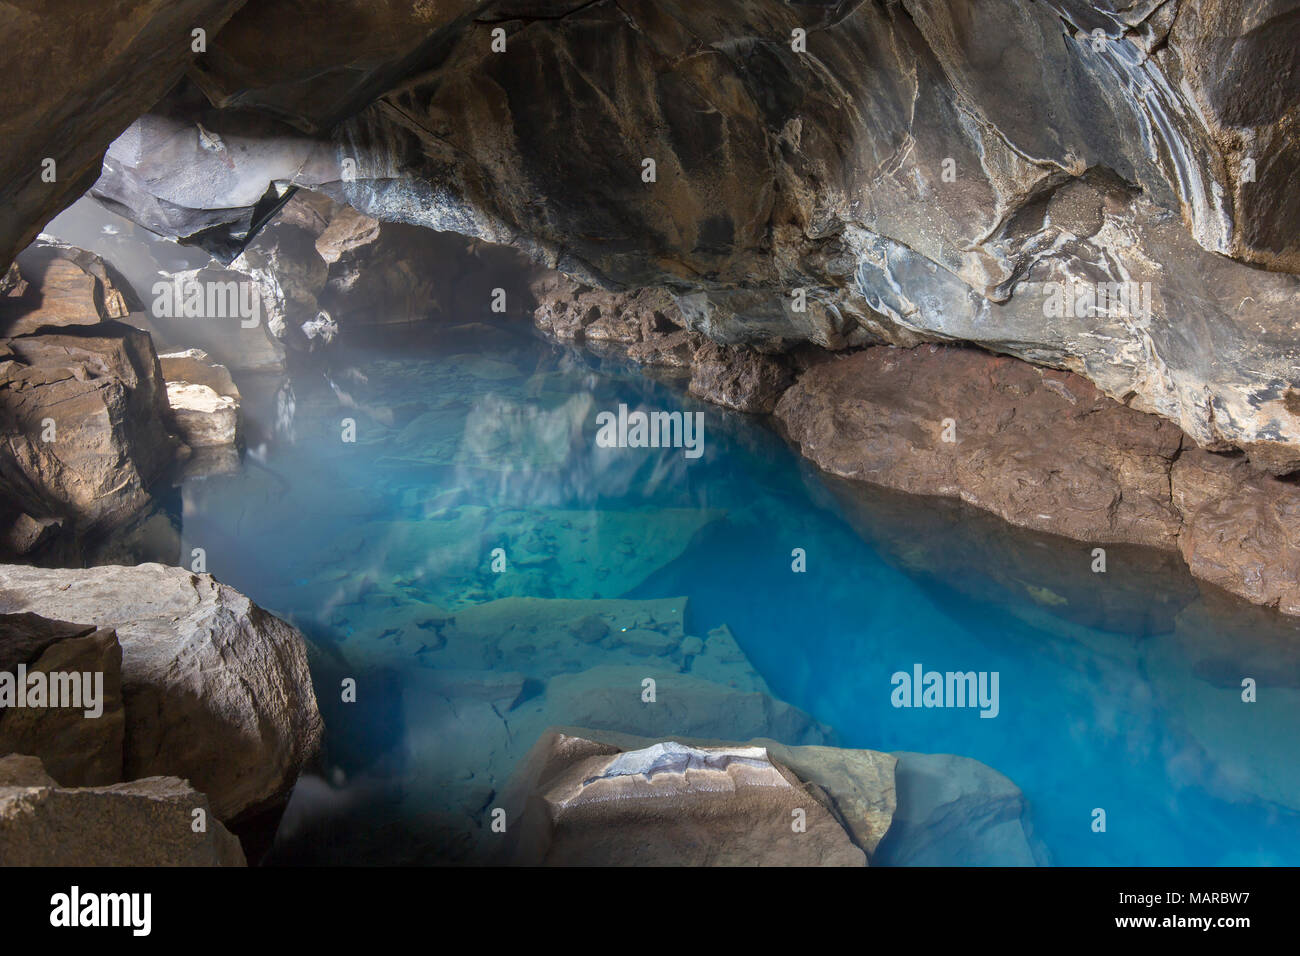 Petite grotte de lave Grjotagja avec une source thermale à l'intérieur. Jökulsarlon, Islande Banque D'Images